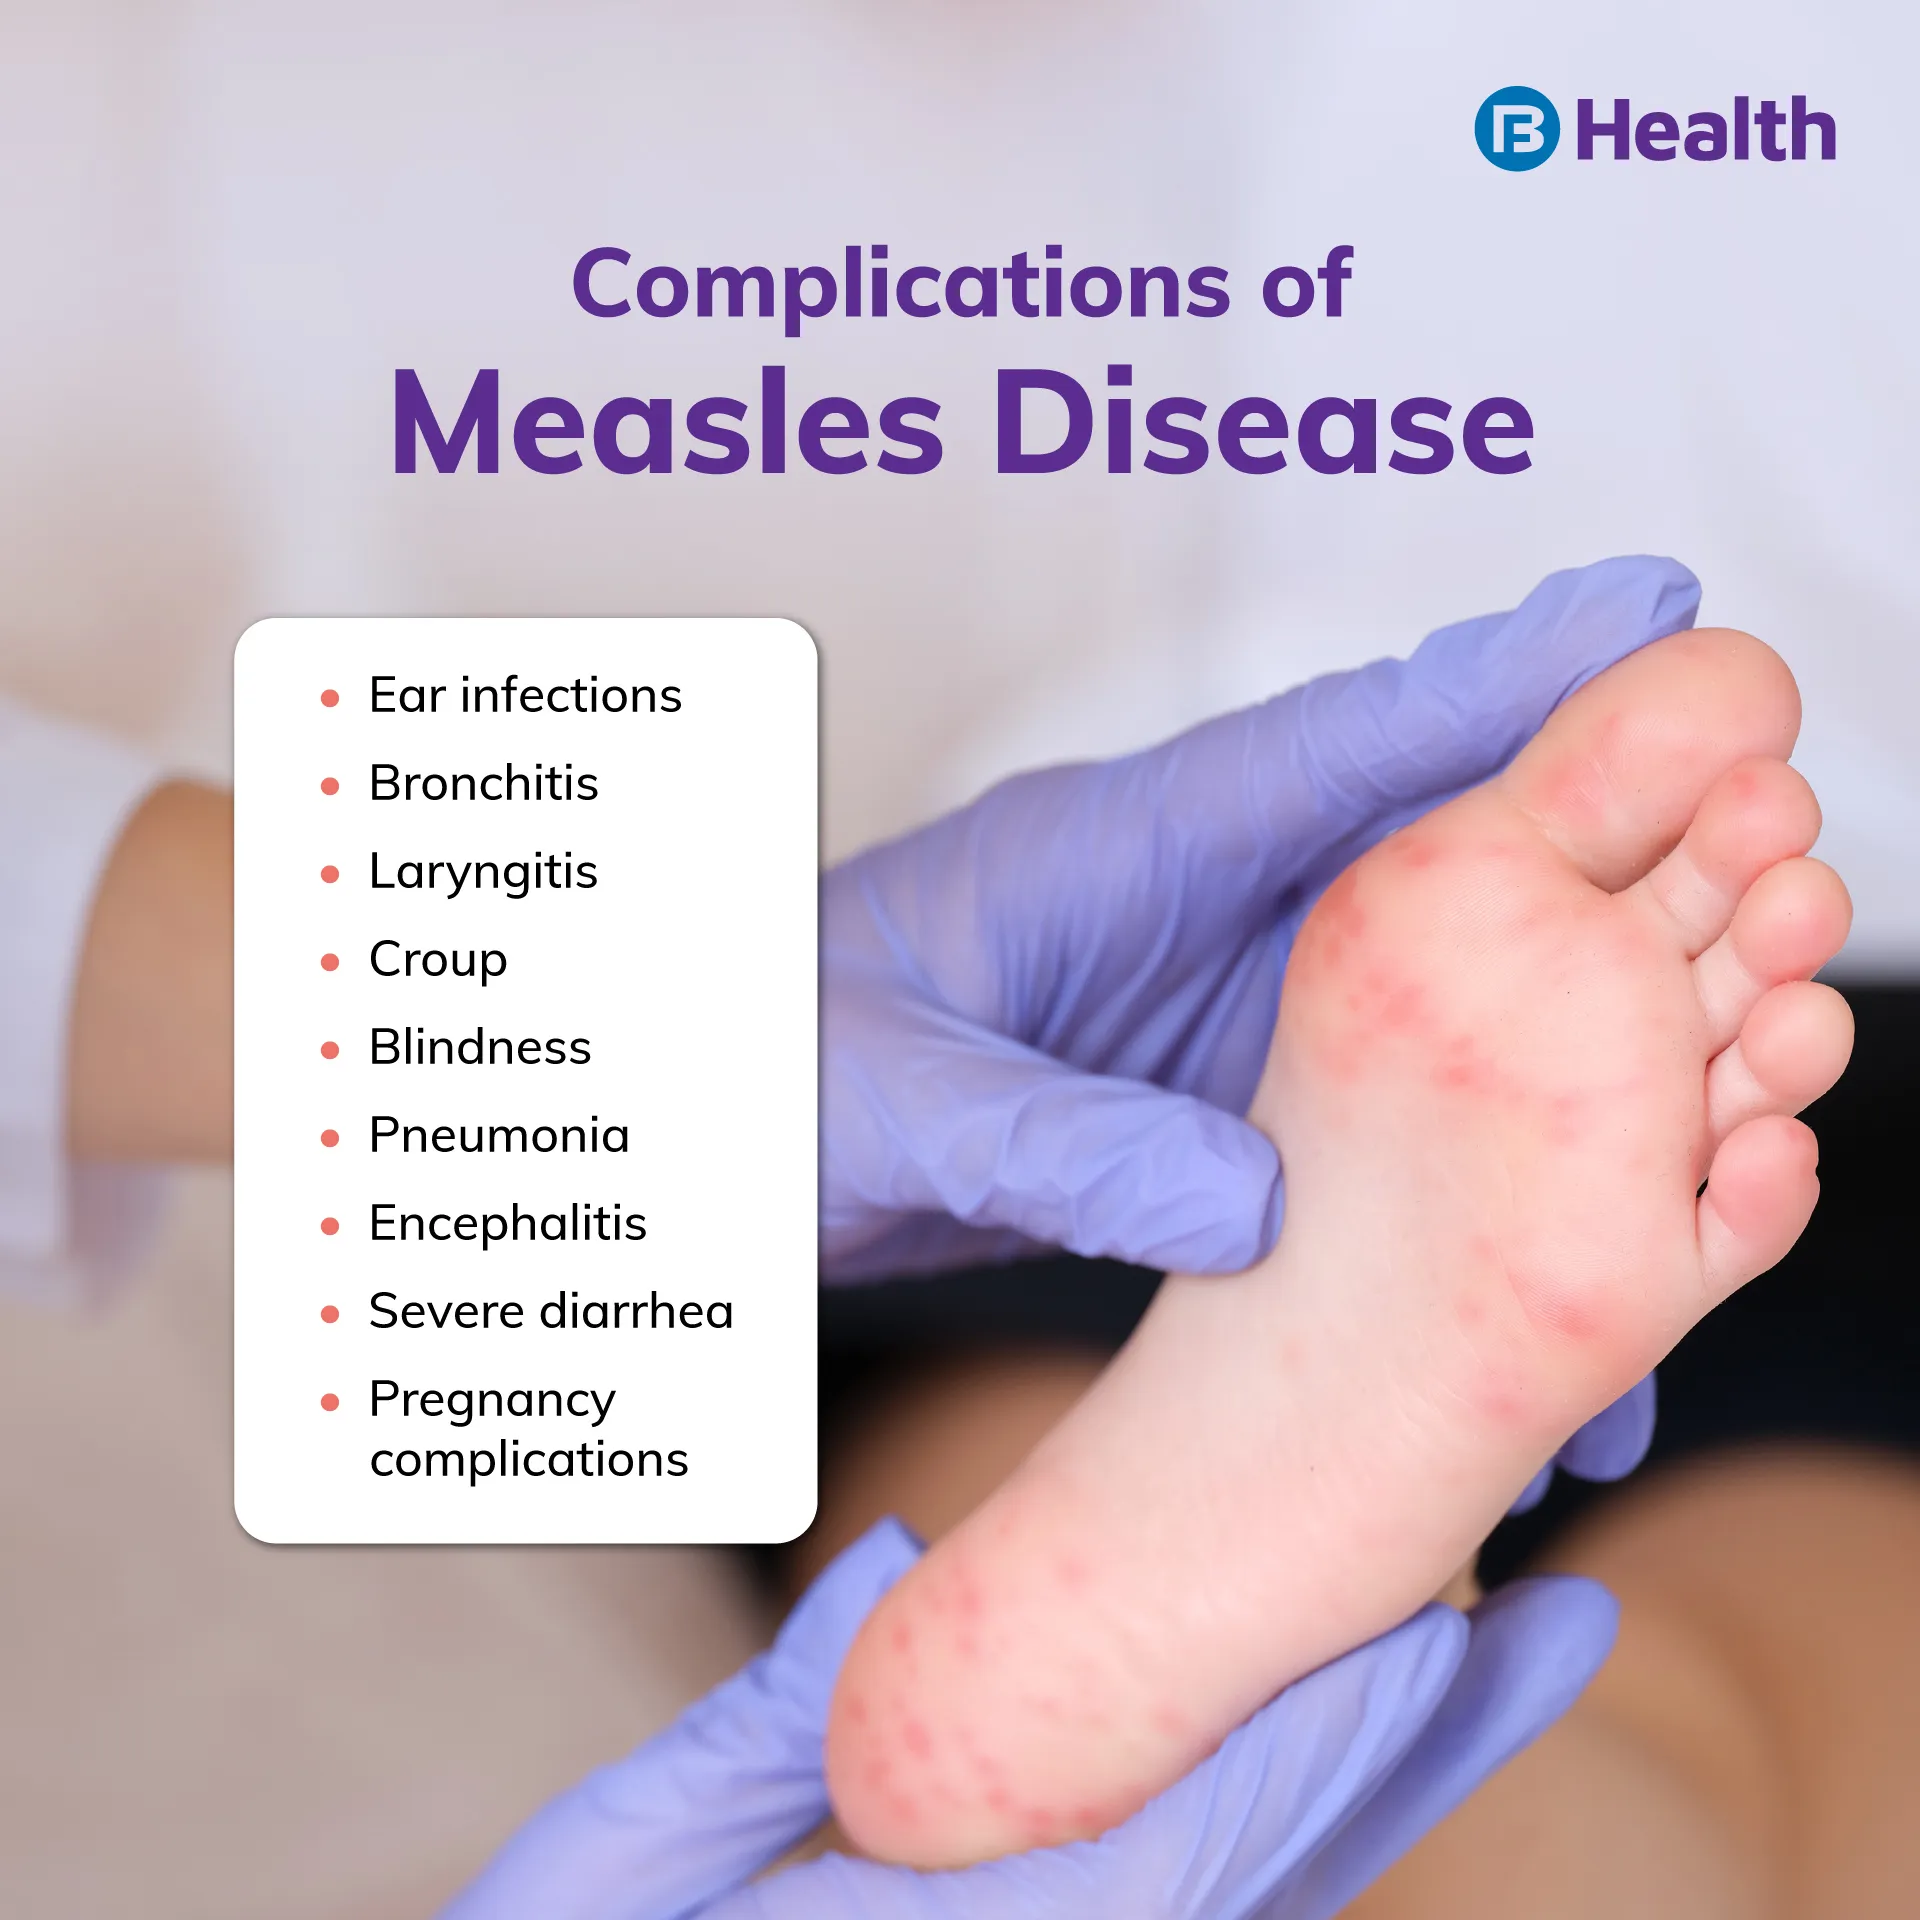 Measles disease complications